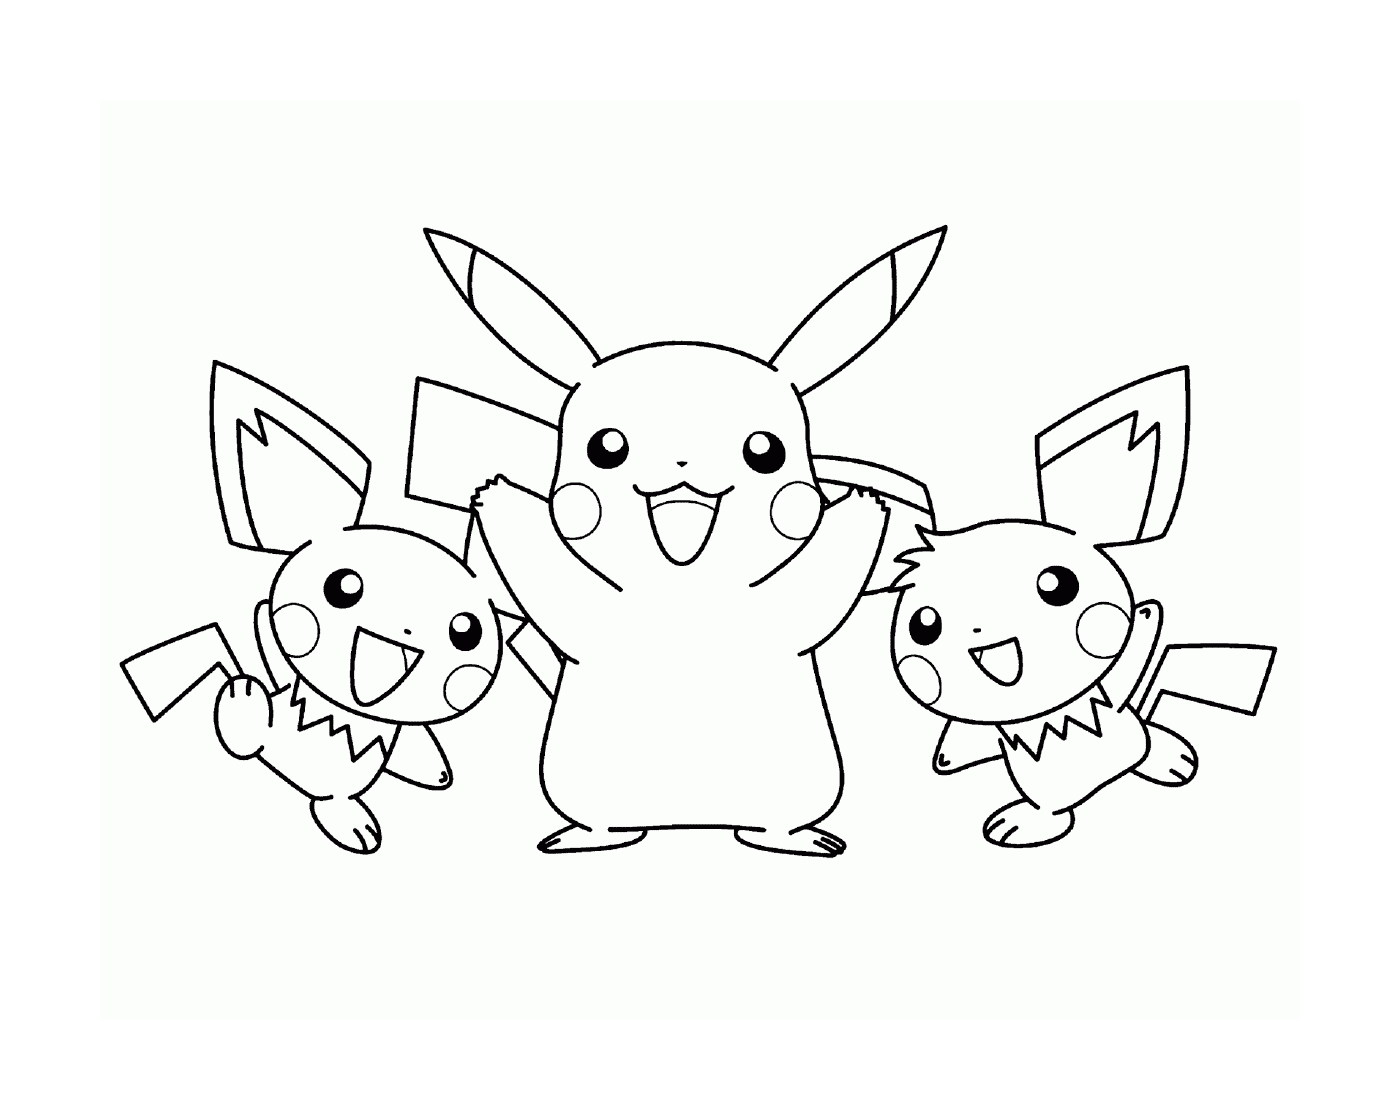   Trois Pikachus réunis 